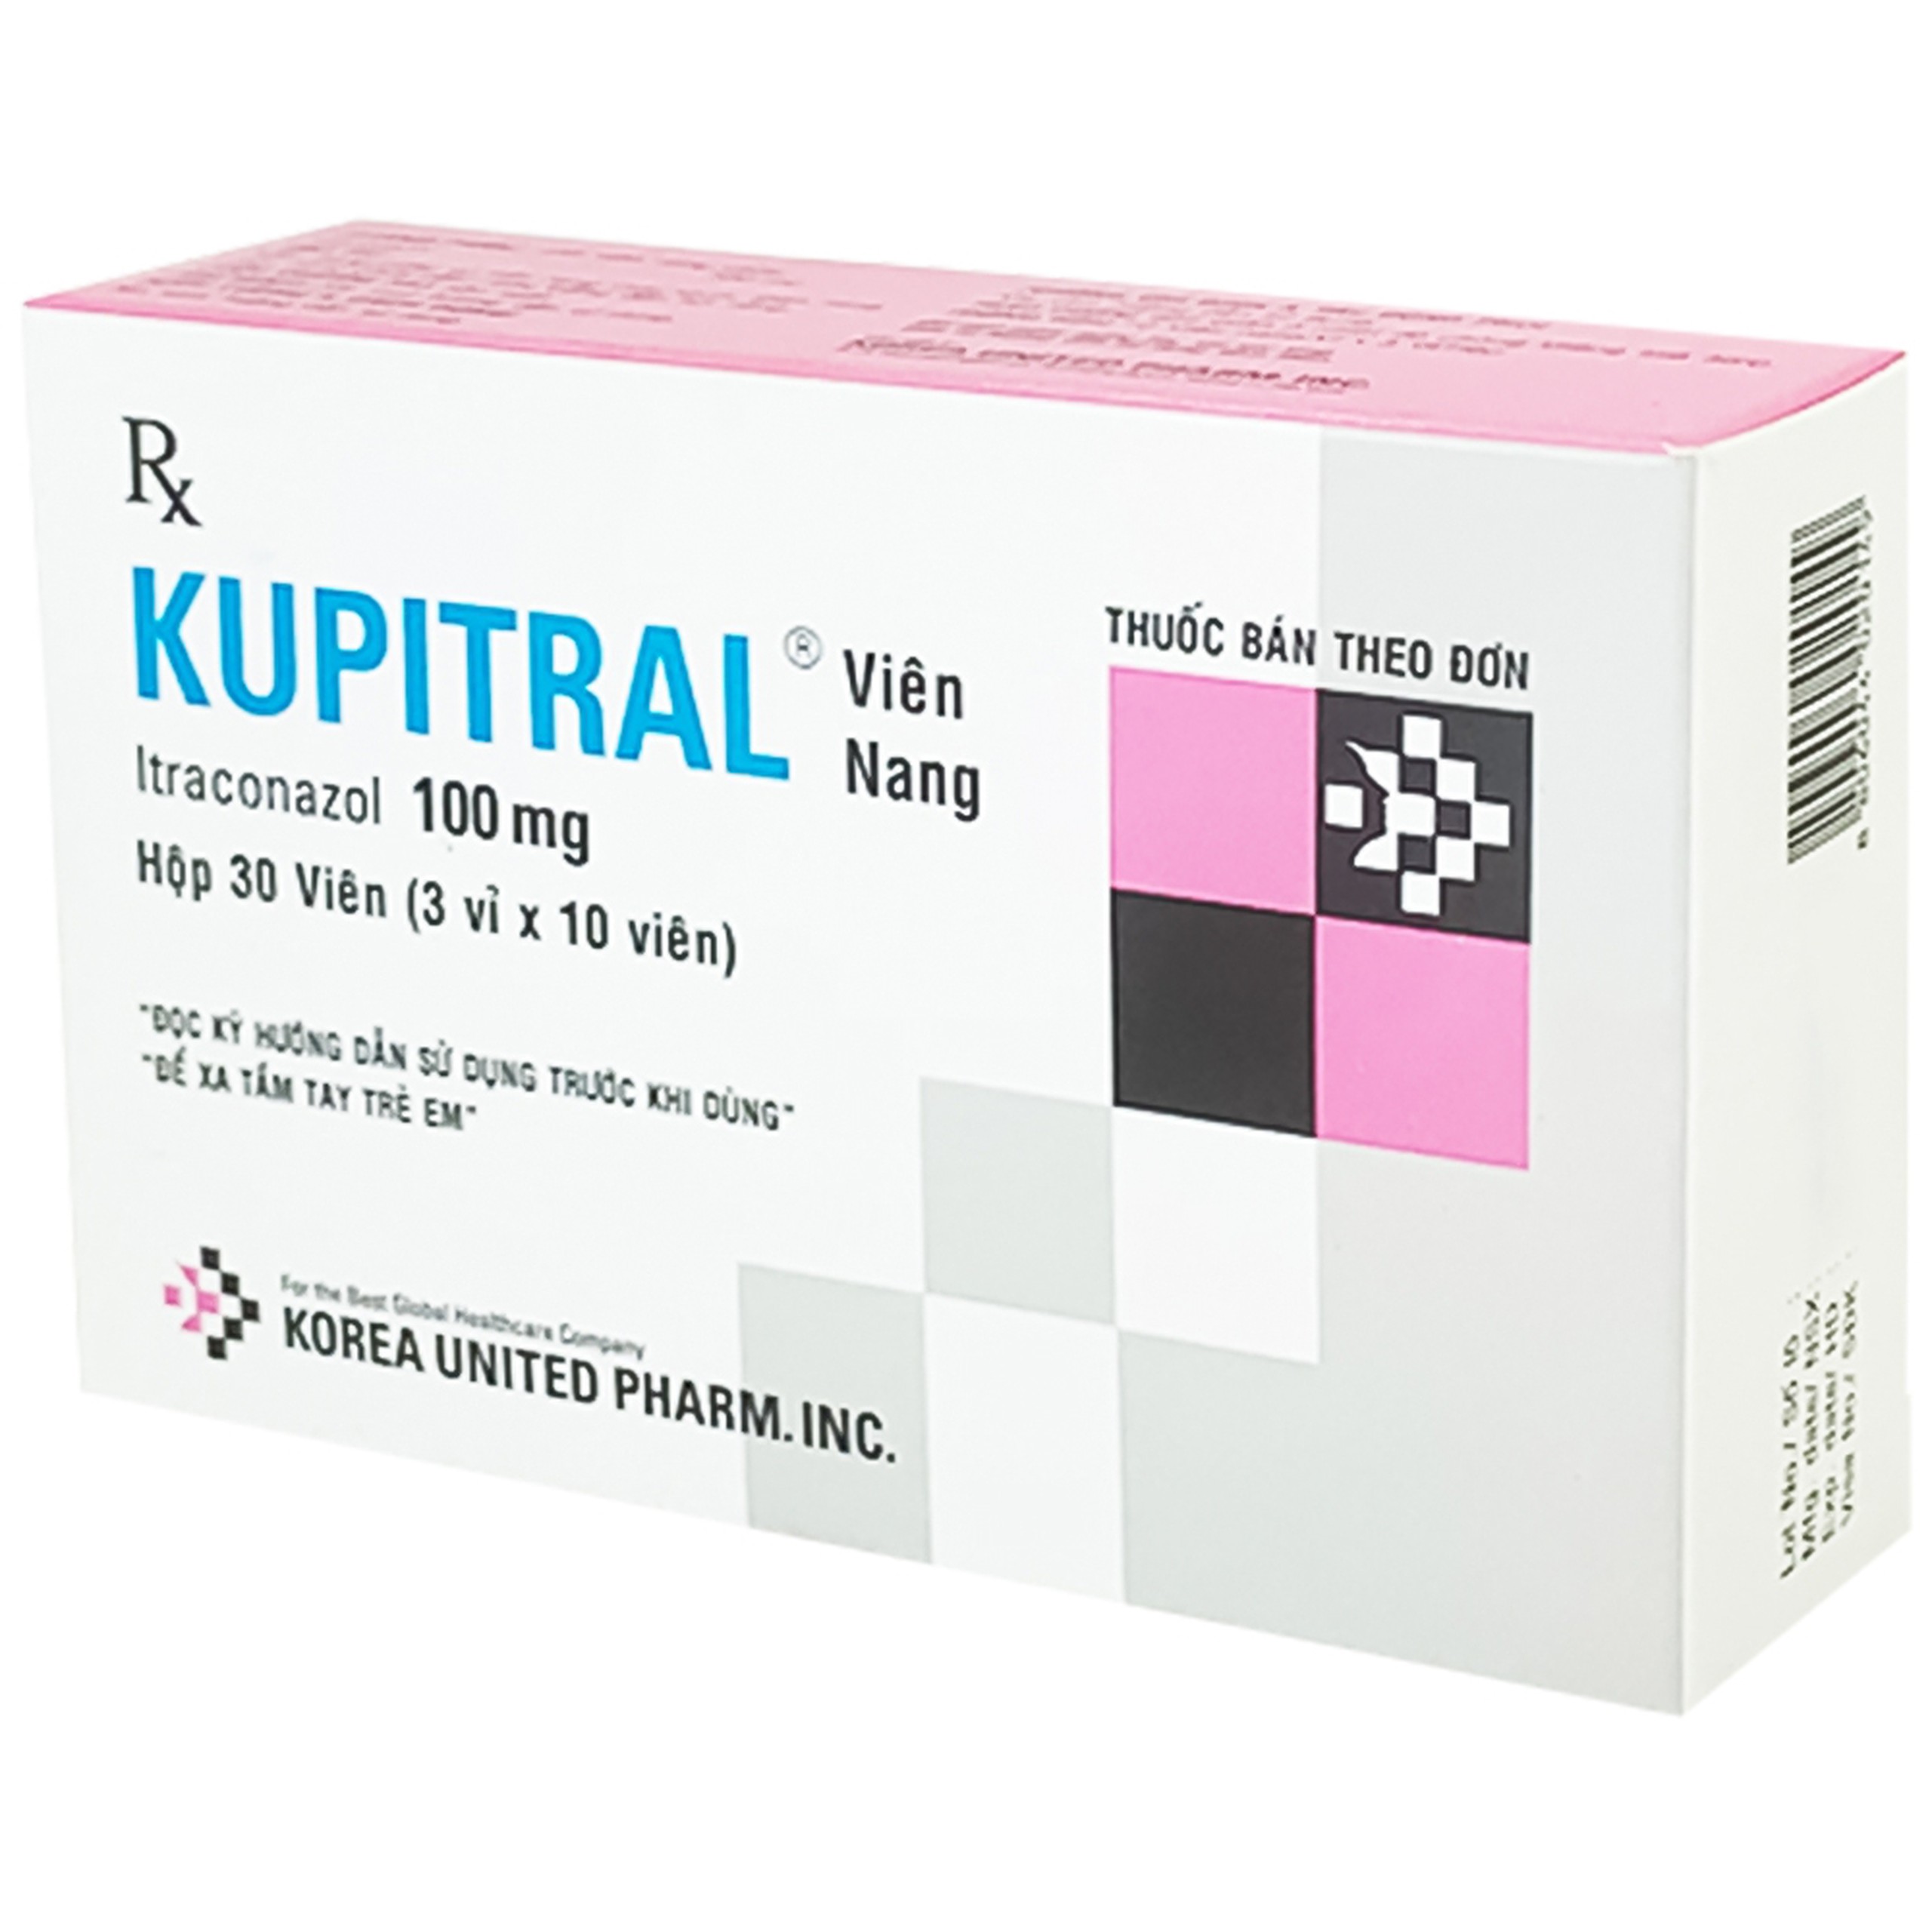 Thuốc Kupitral 100mg Korea United điều trị nhiễm candida âm đạo, âm hộ, lang ben (3 vỉ x 10 viên)